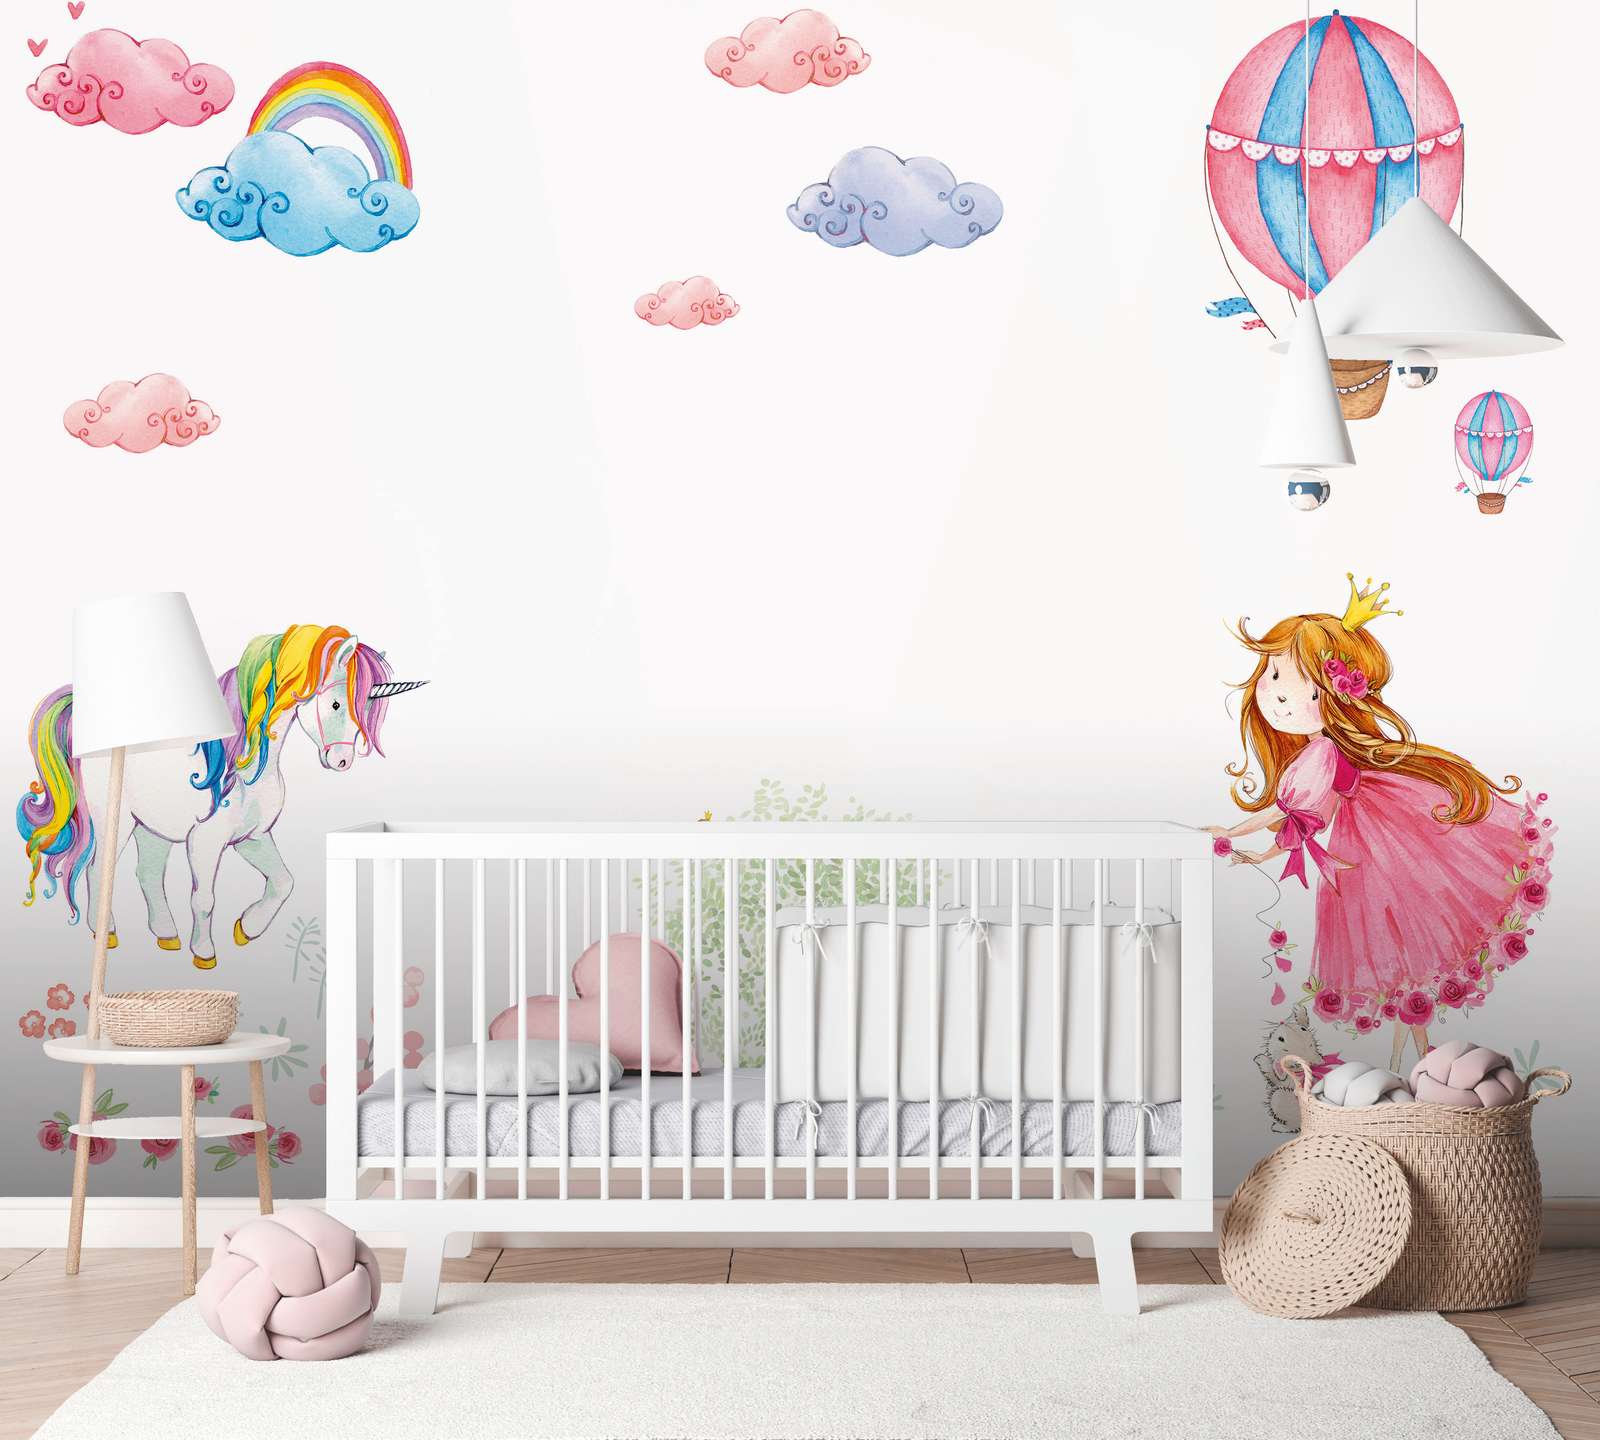             Papier peint panoramique chambre d'enfant avec princesse et licorne - rose, multicolore, blanc
        